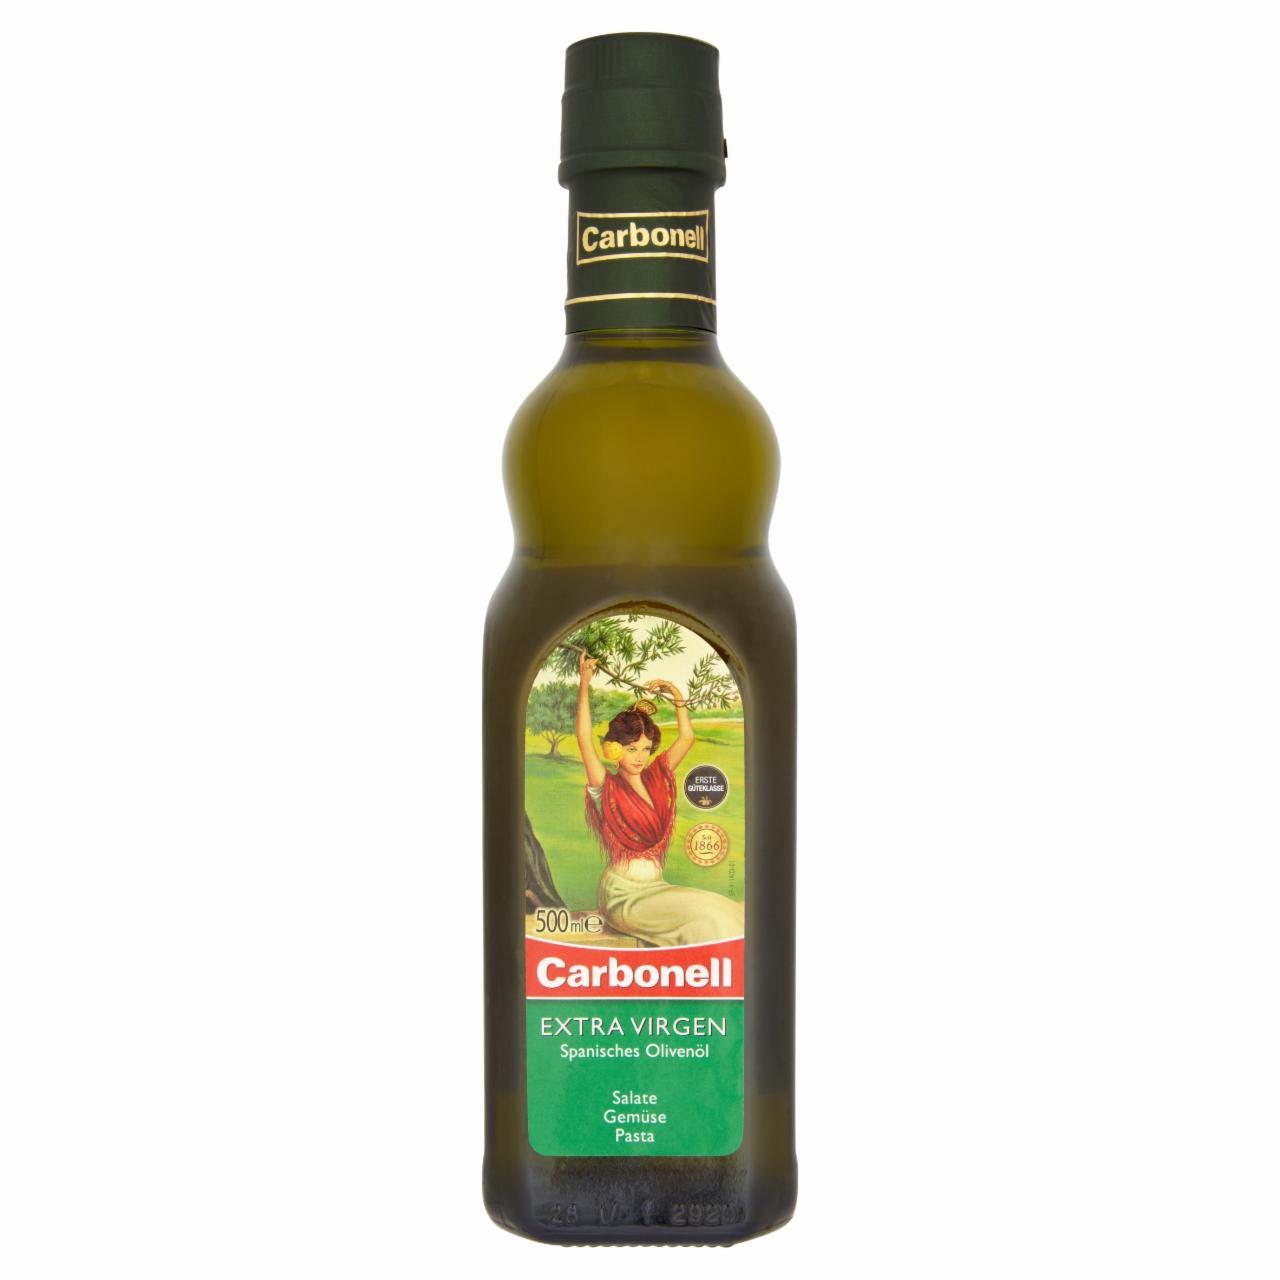 Képek - Carbonell extra szűz spanyol olívaolaj 500 ml